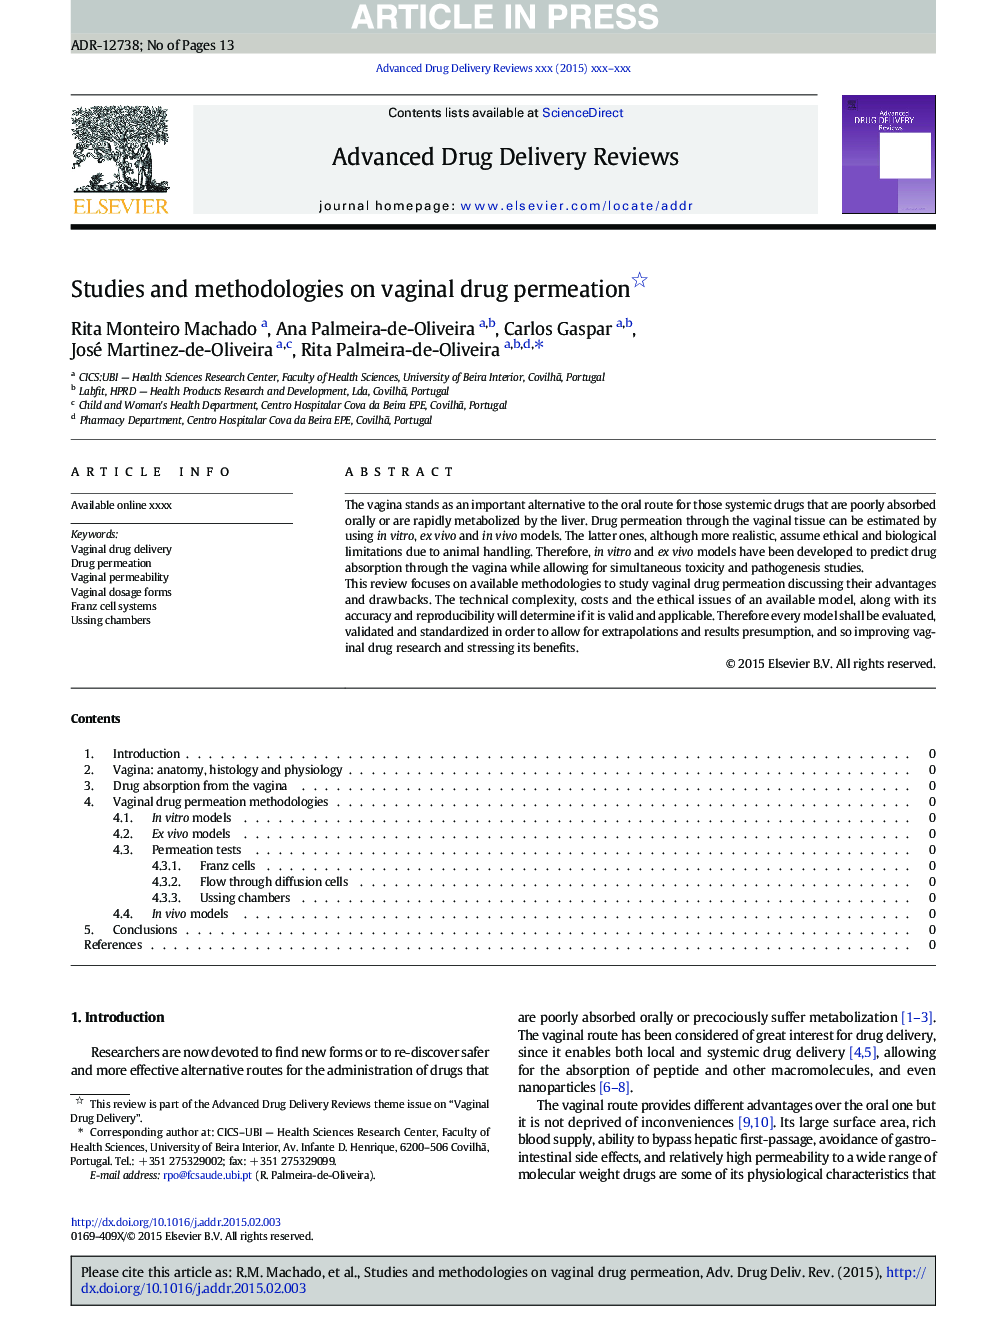 Studies and methodologies on vaginal drug permeation